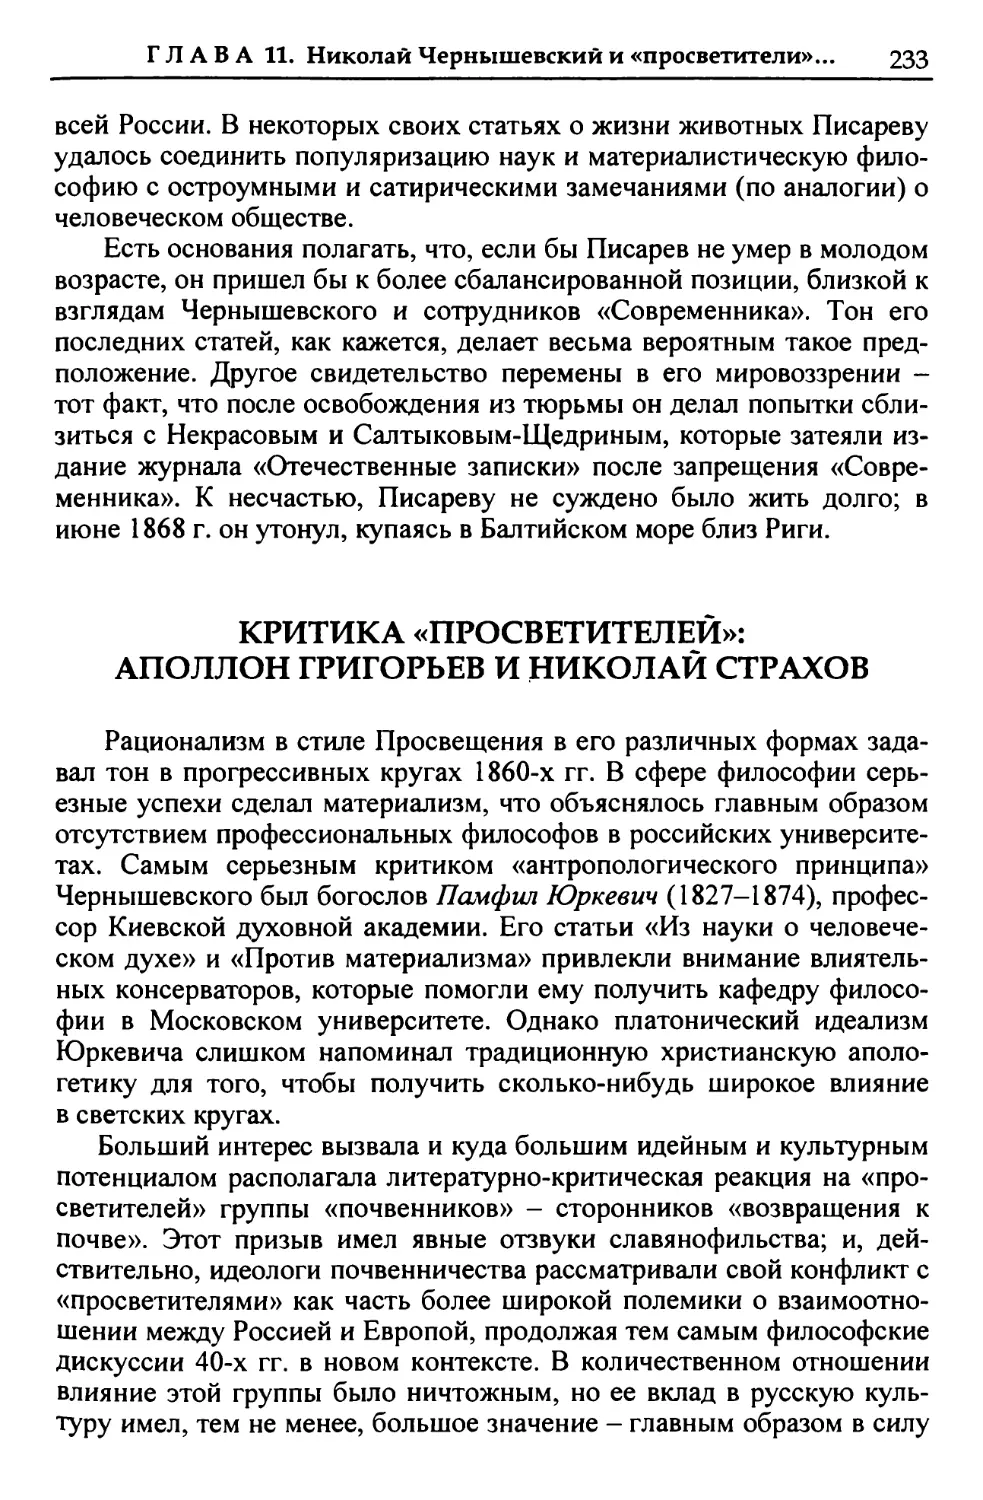 Критика «просветителей»: Аполлон Григорьев и Николай Страхов